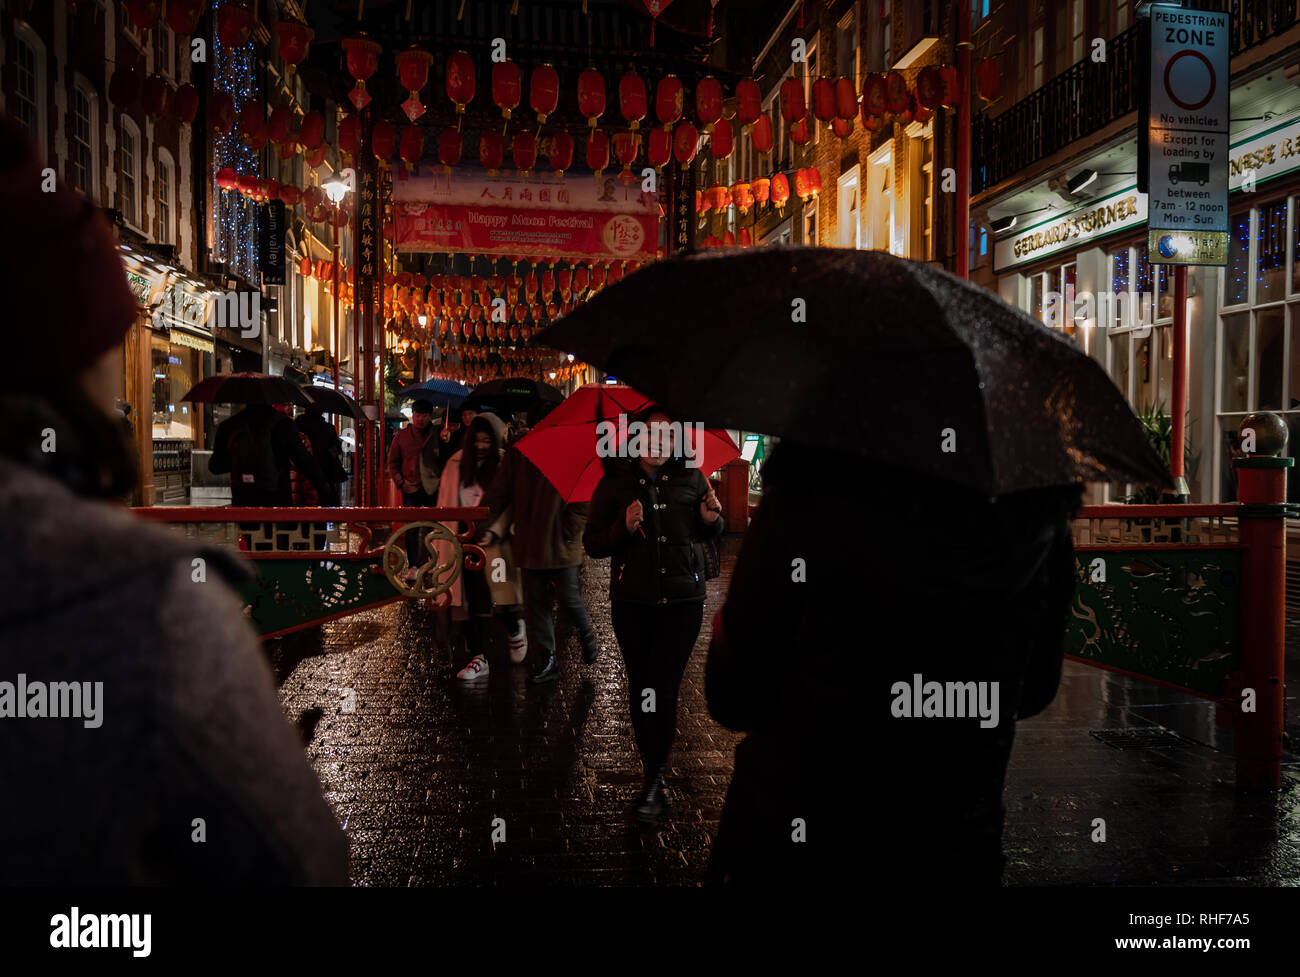 La nuit dans le China town sur un soir de pluie Banque D'Images